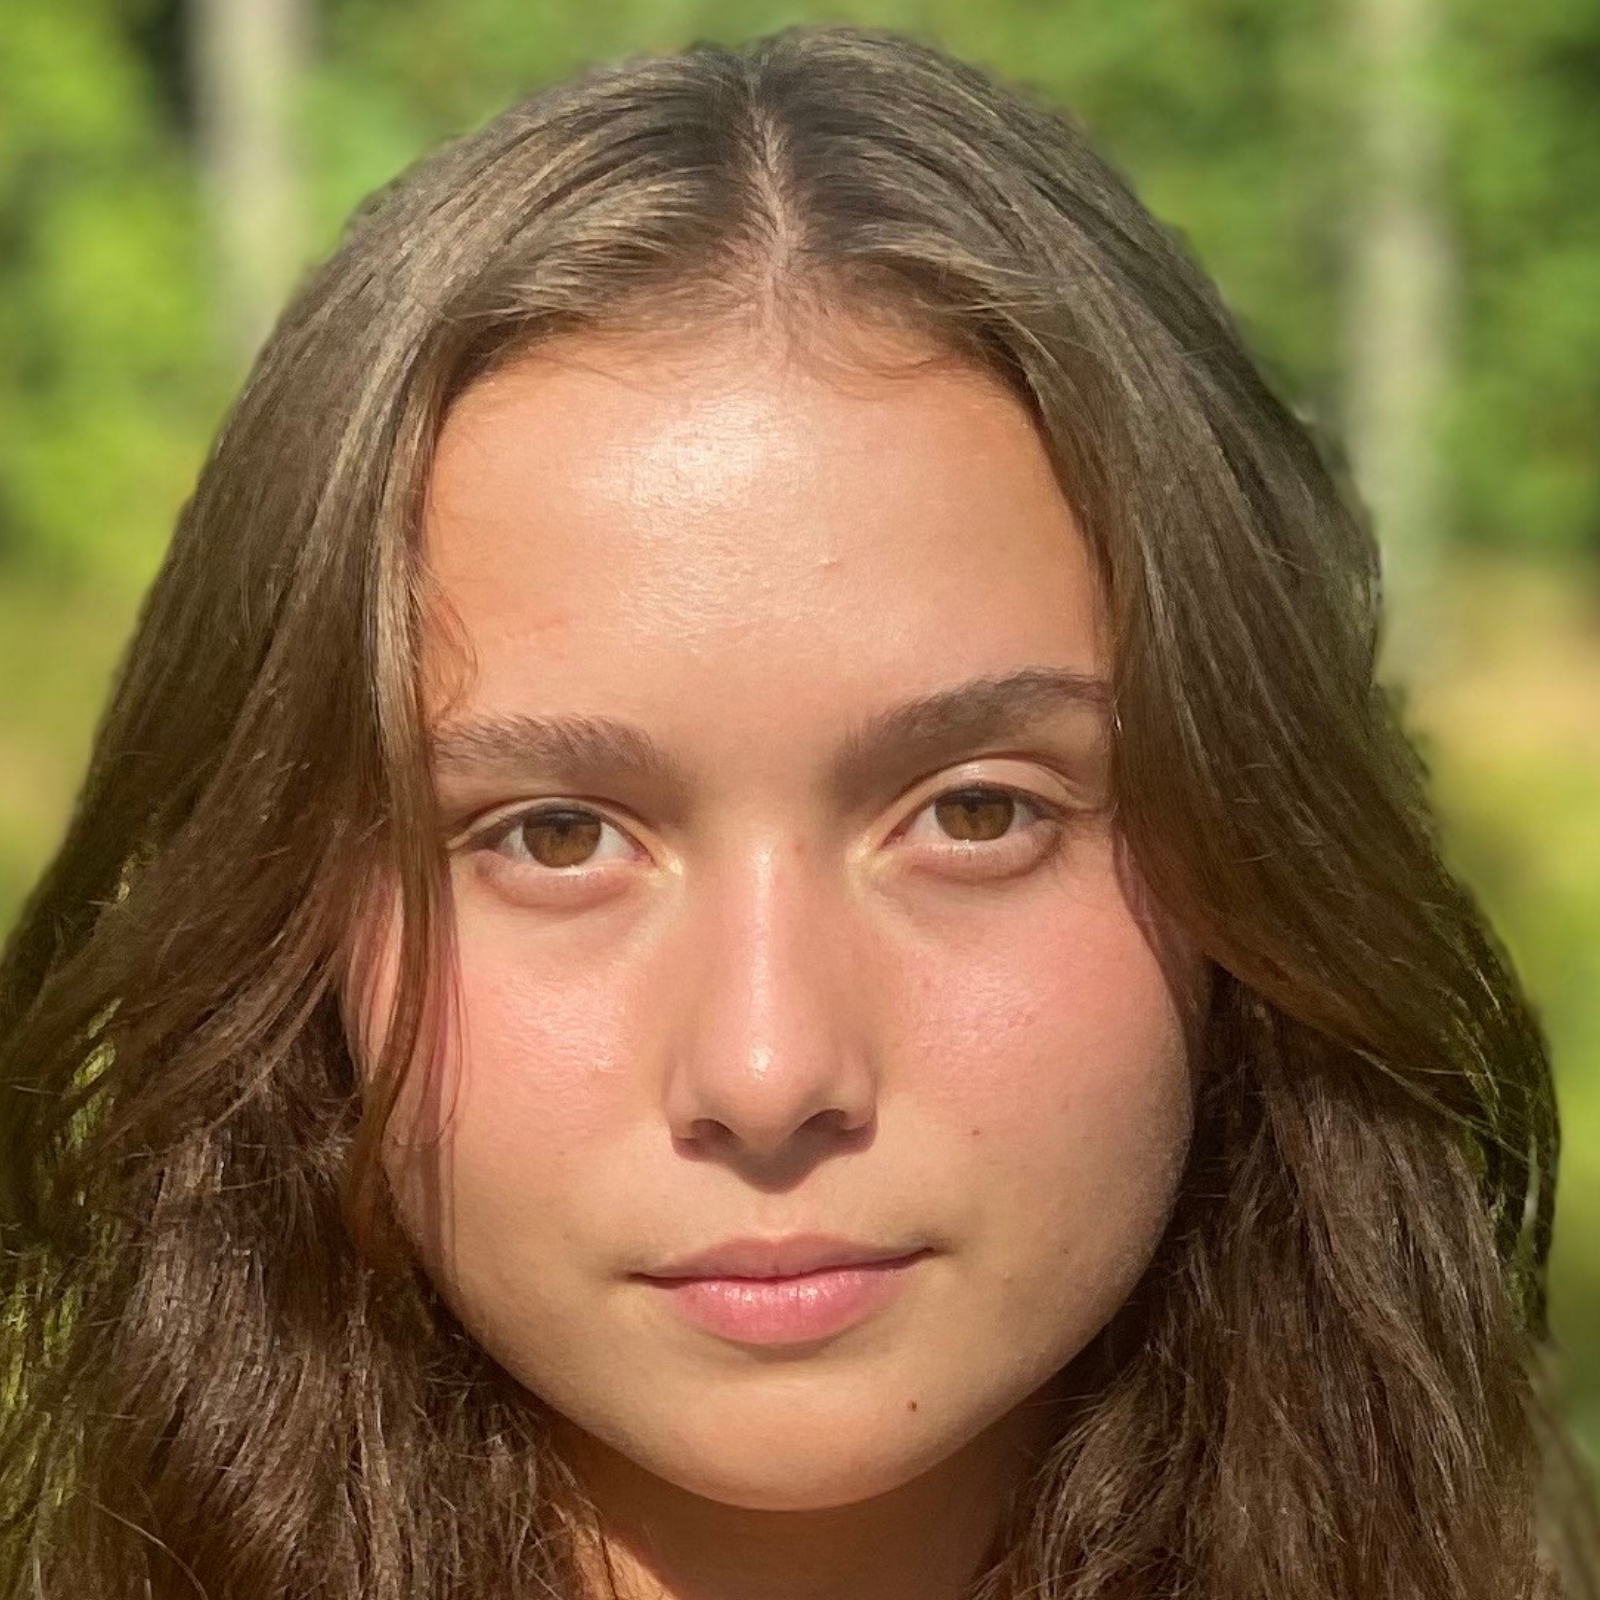 Hana Mulalic (16) 